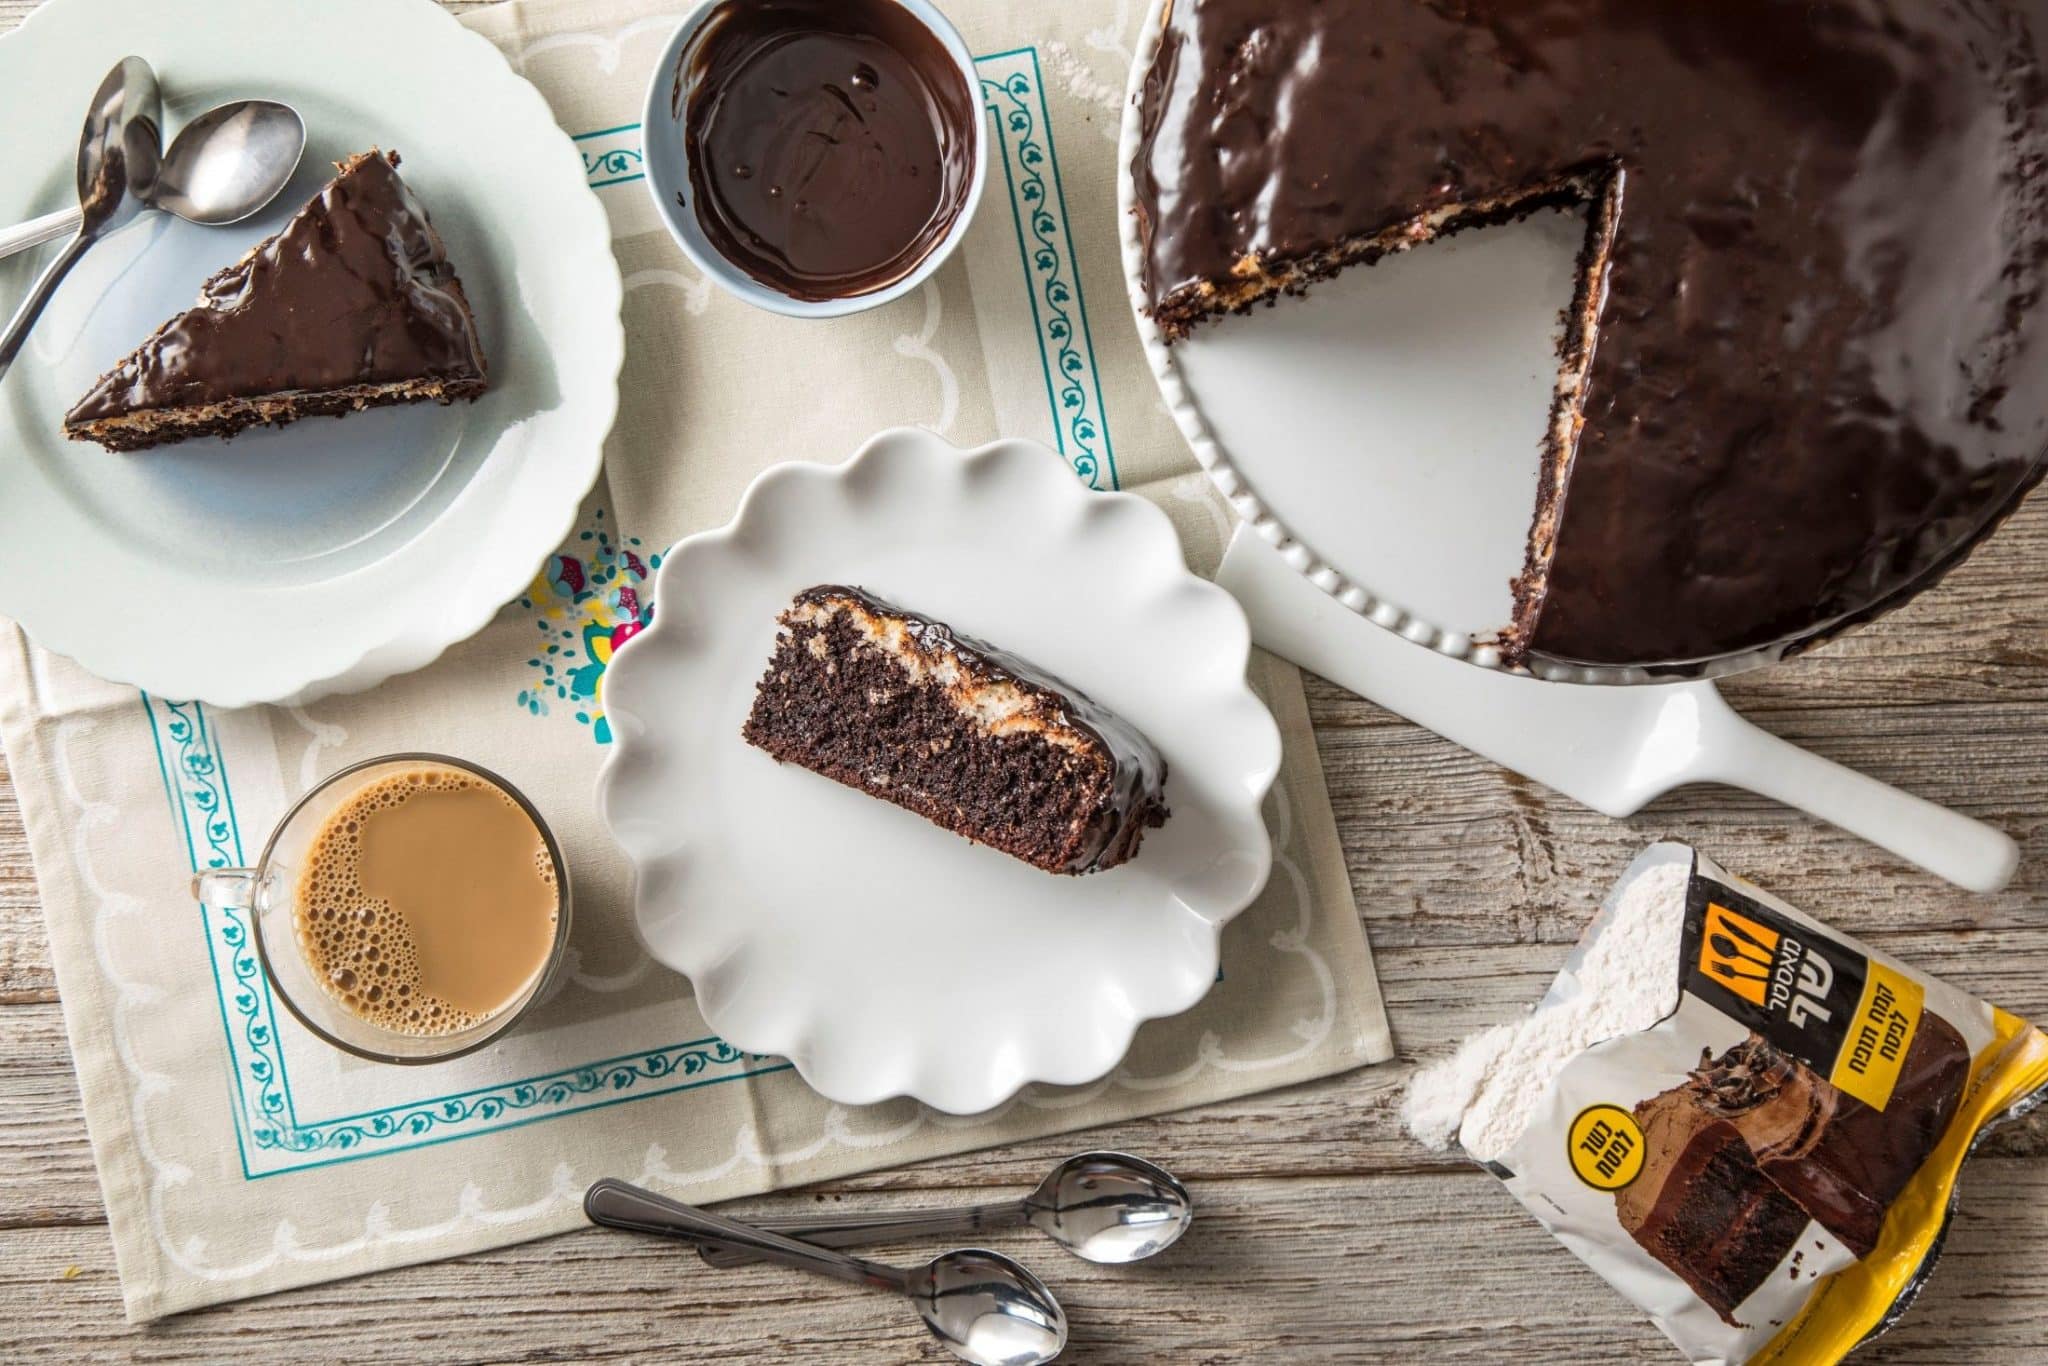 בקערה ממיסים יחד במיקרוגל שמנת מתוקה ו-200 גרם שוקולד מריר עד לקבלת גנאש מבריק אותו יוצקים על העוגה .צילום המערכת